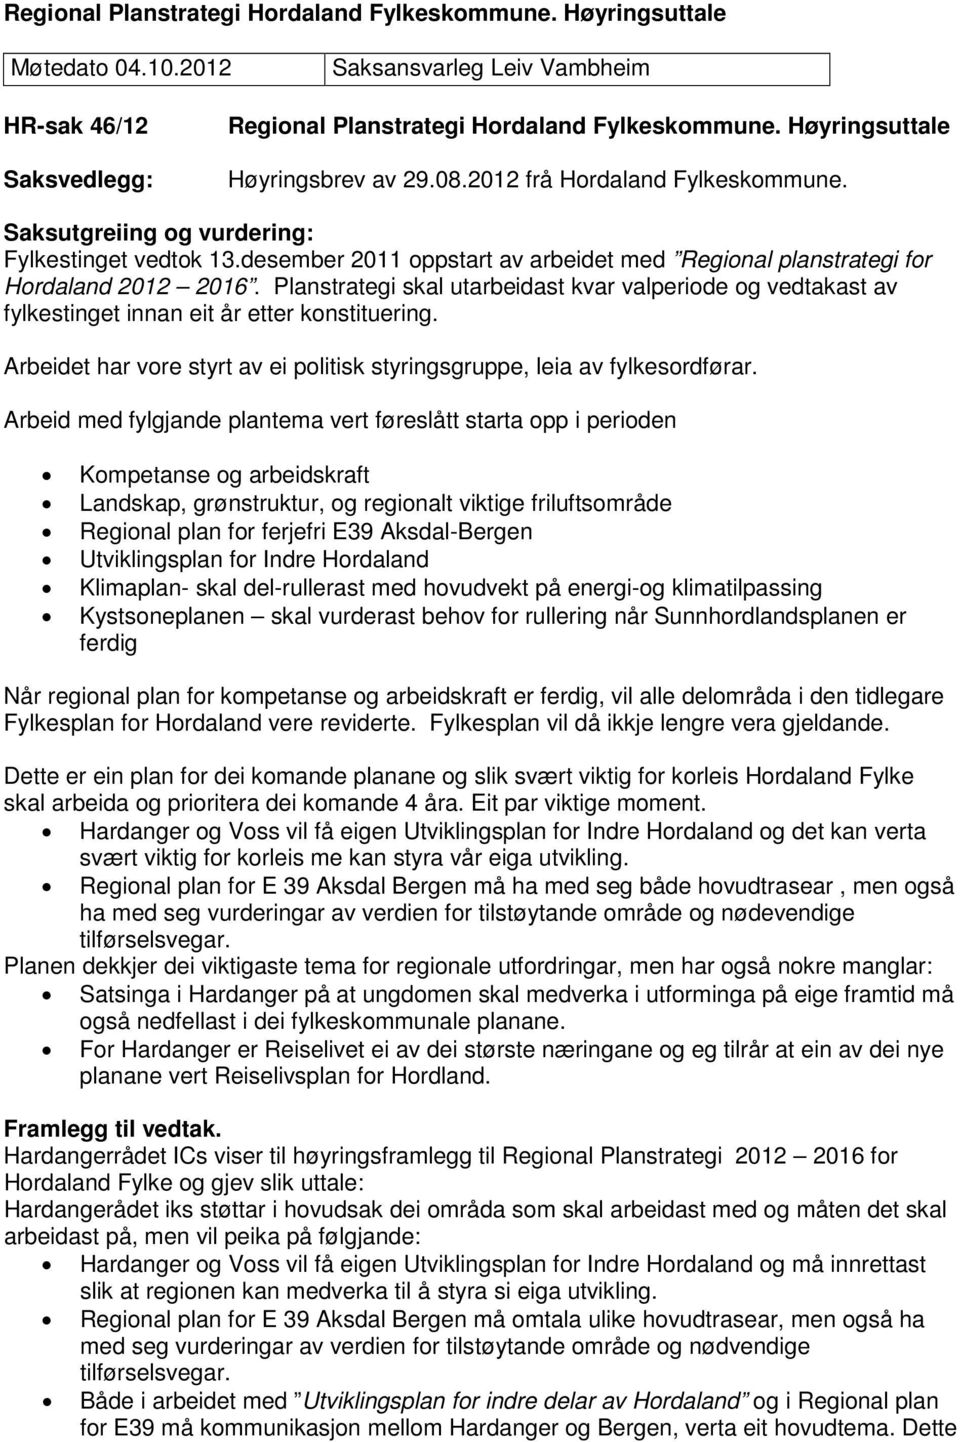 desember 2011 oppstart av arbeidet med Regional planstrategi for Hordaland 2012 2016. Planstrategi skal utarbeidast kvar valperiode og vedtakast av fylkestinget innan eit år etter konstituering.